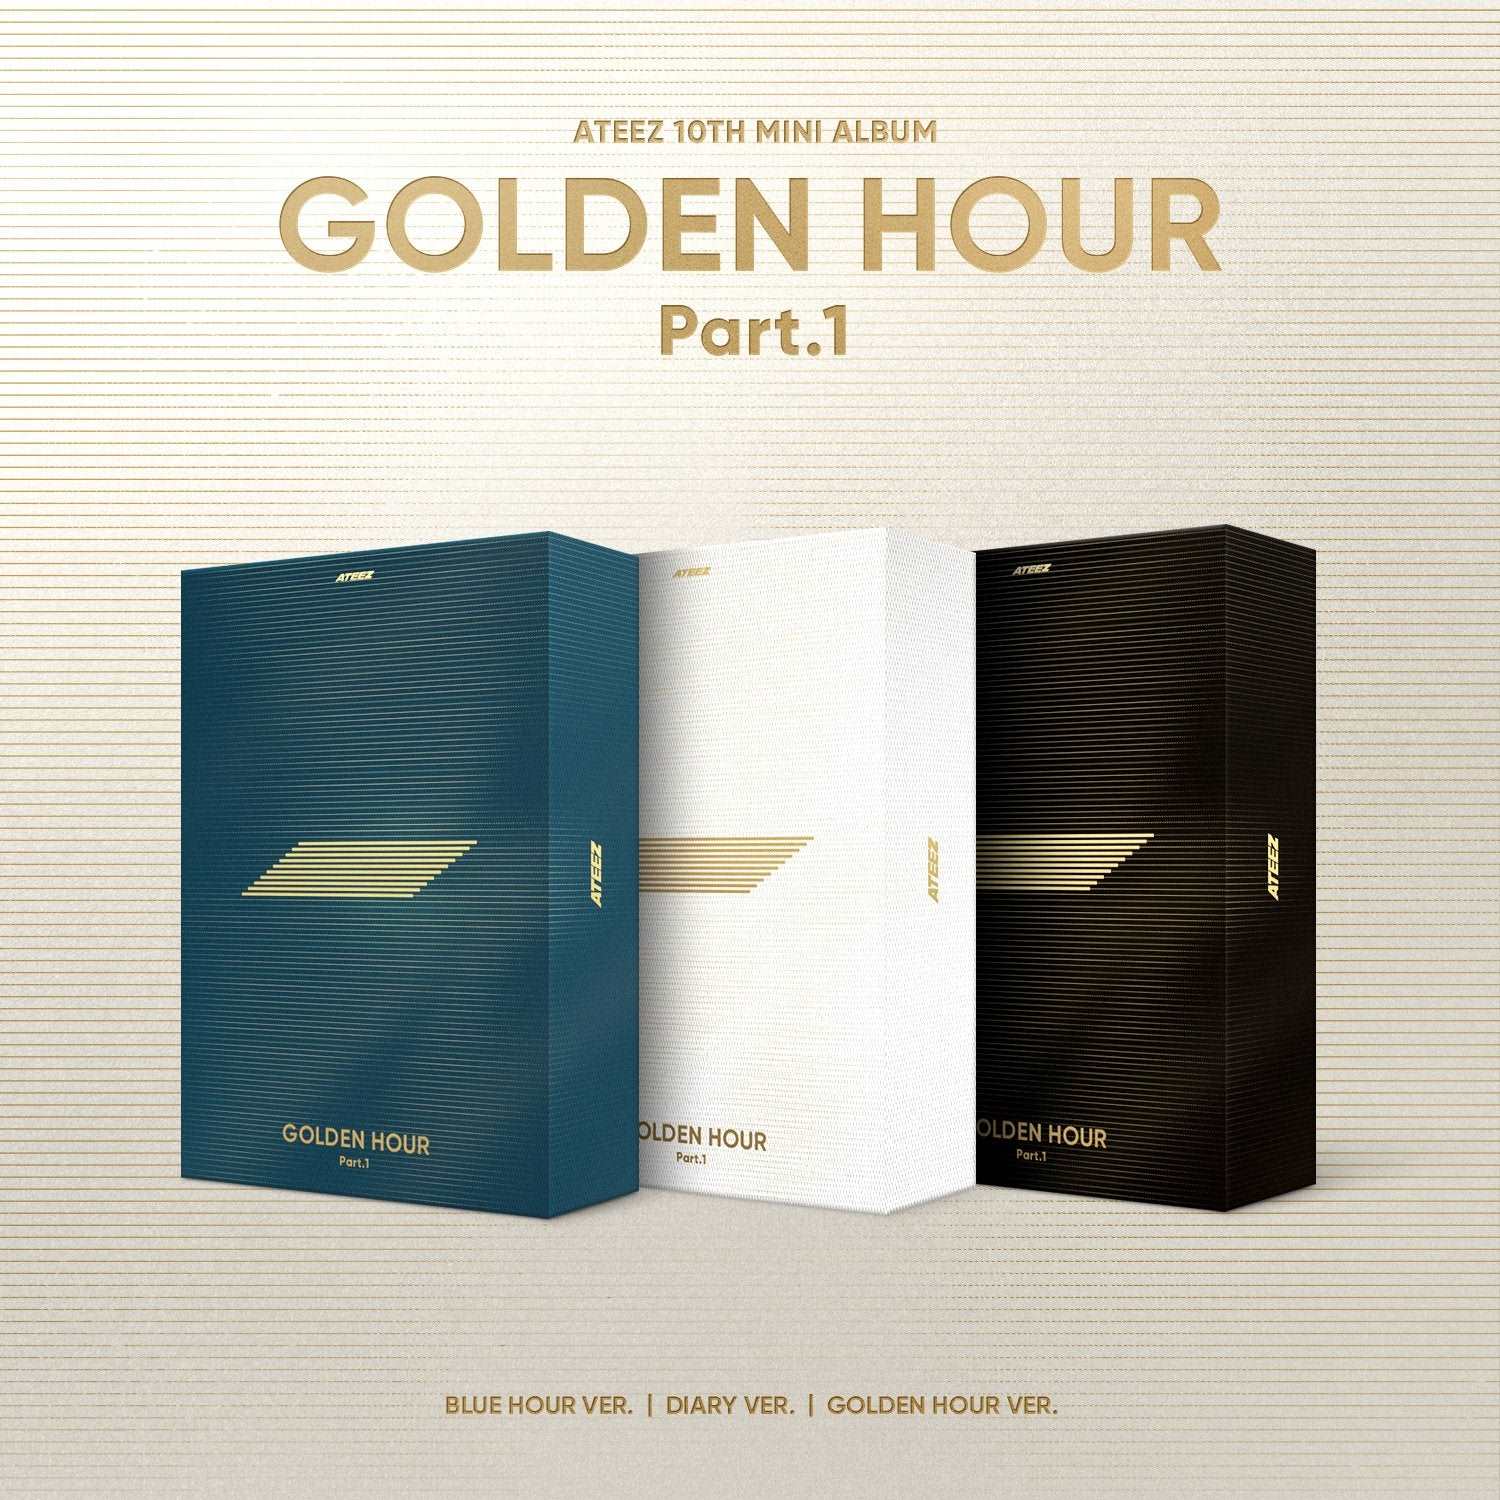 ATEEZ Golden Hour Part 1 Album